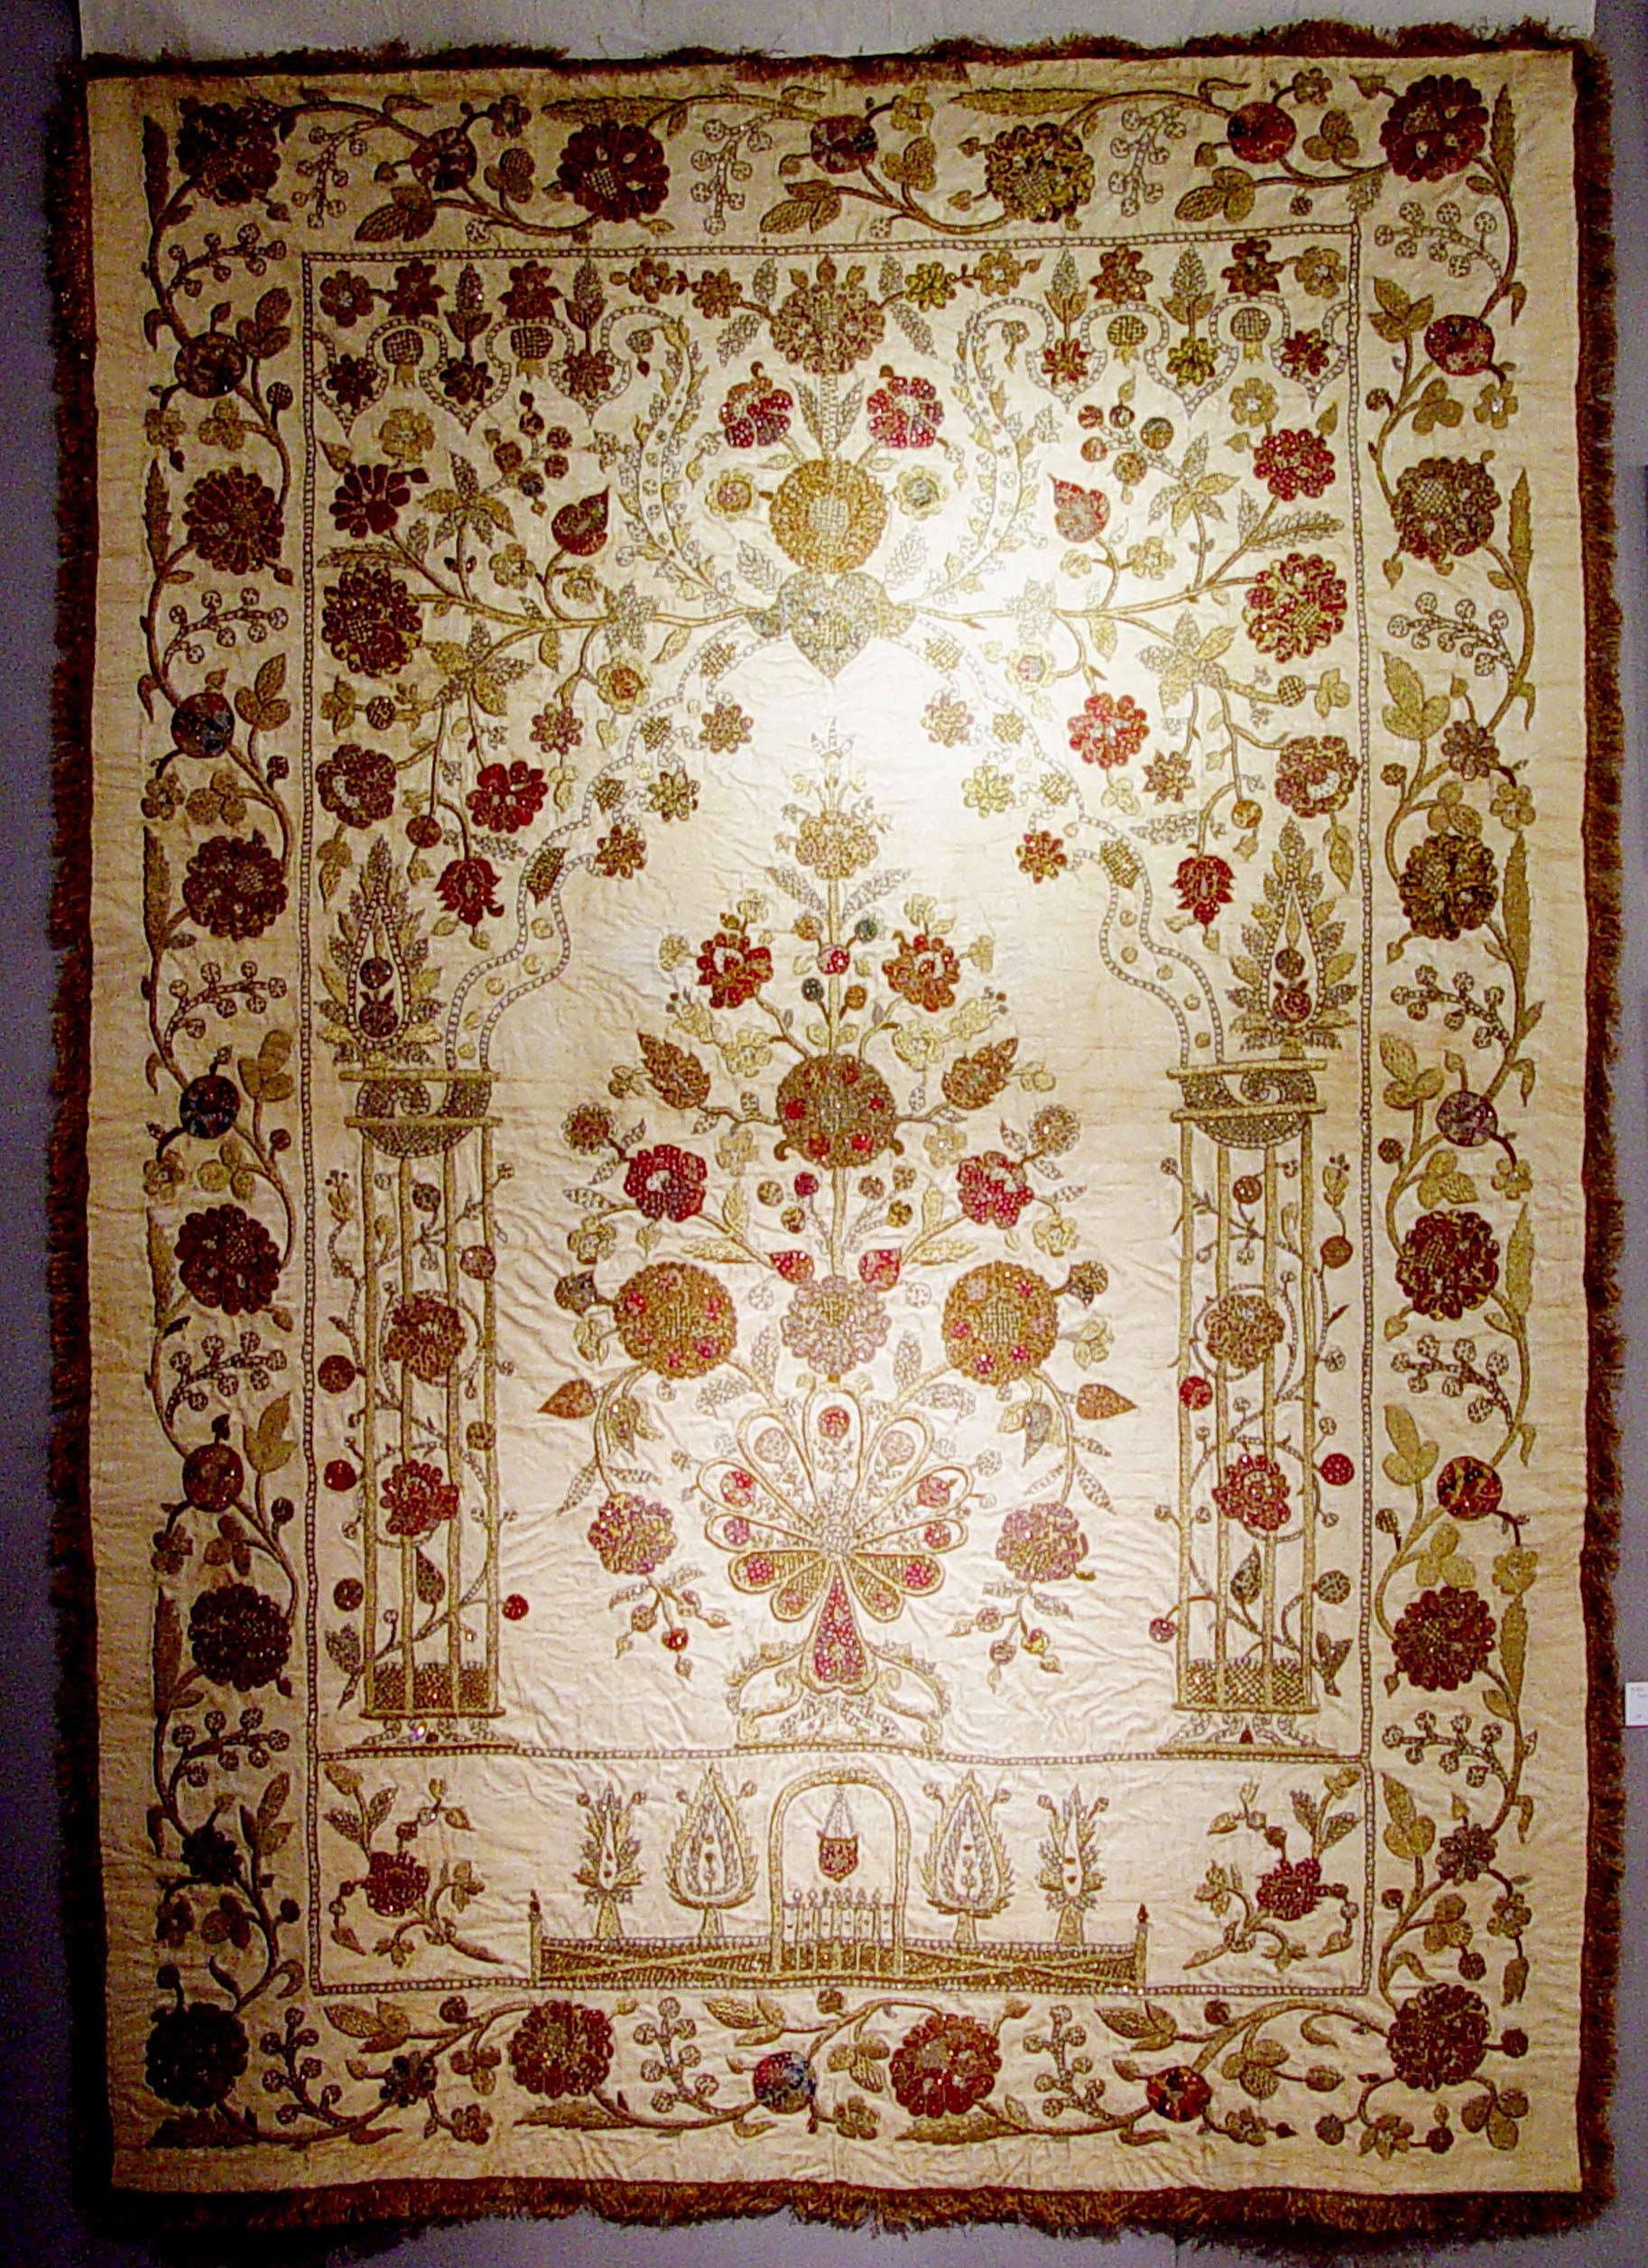 Ce textile ottoman est orné de broderies dorées sur un fond de satin de soie beige représentant des fleurs.

Cette œuvre de soie massive représente le décor de jardin du paradis décrit dans le Coran. Elle représente une porte voûtée, la porte du